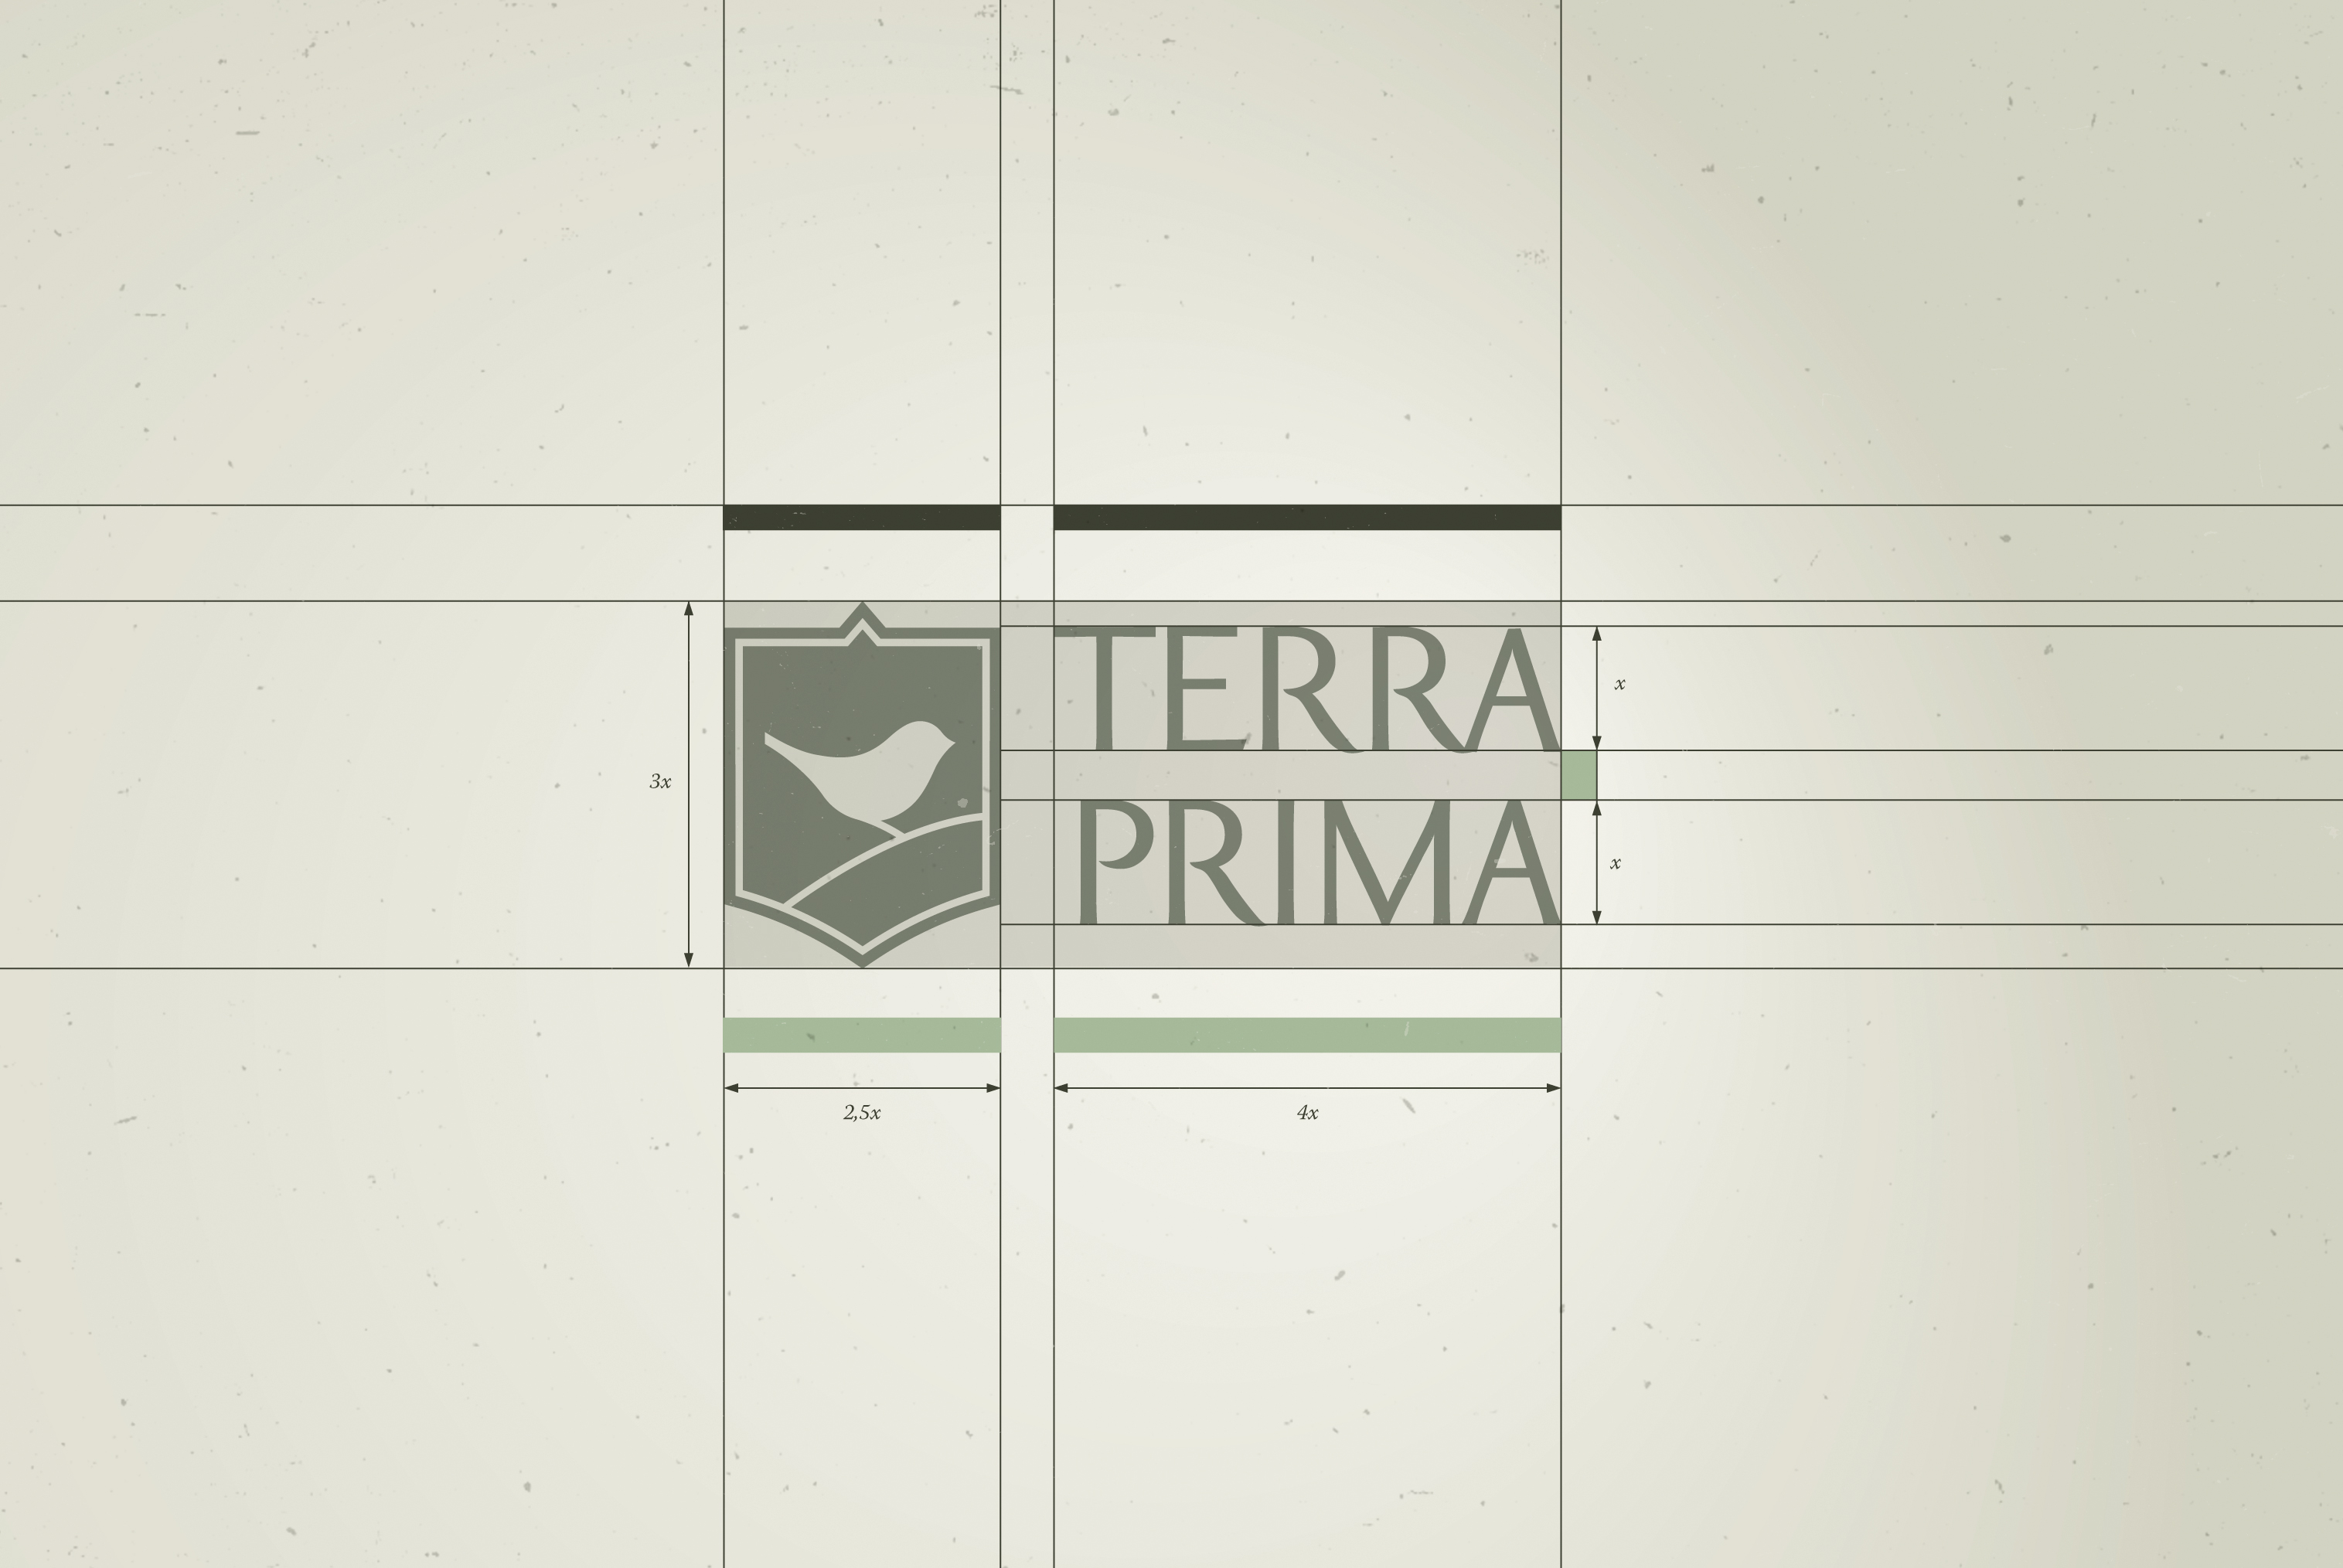 Отрисовка логотипа Terra Prima